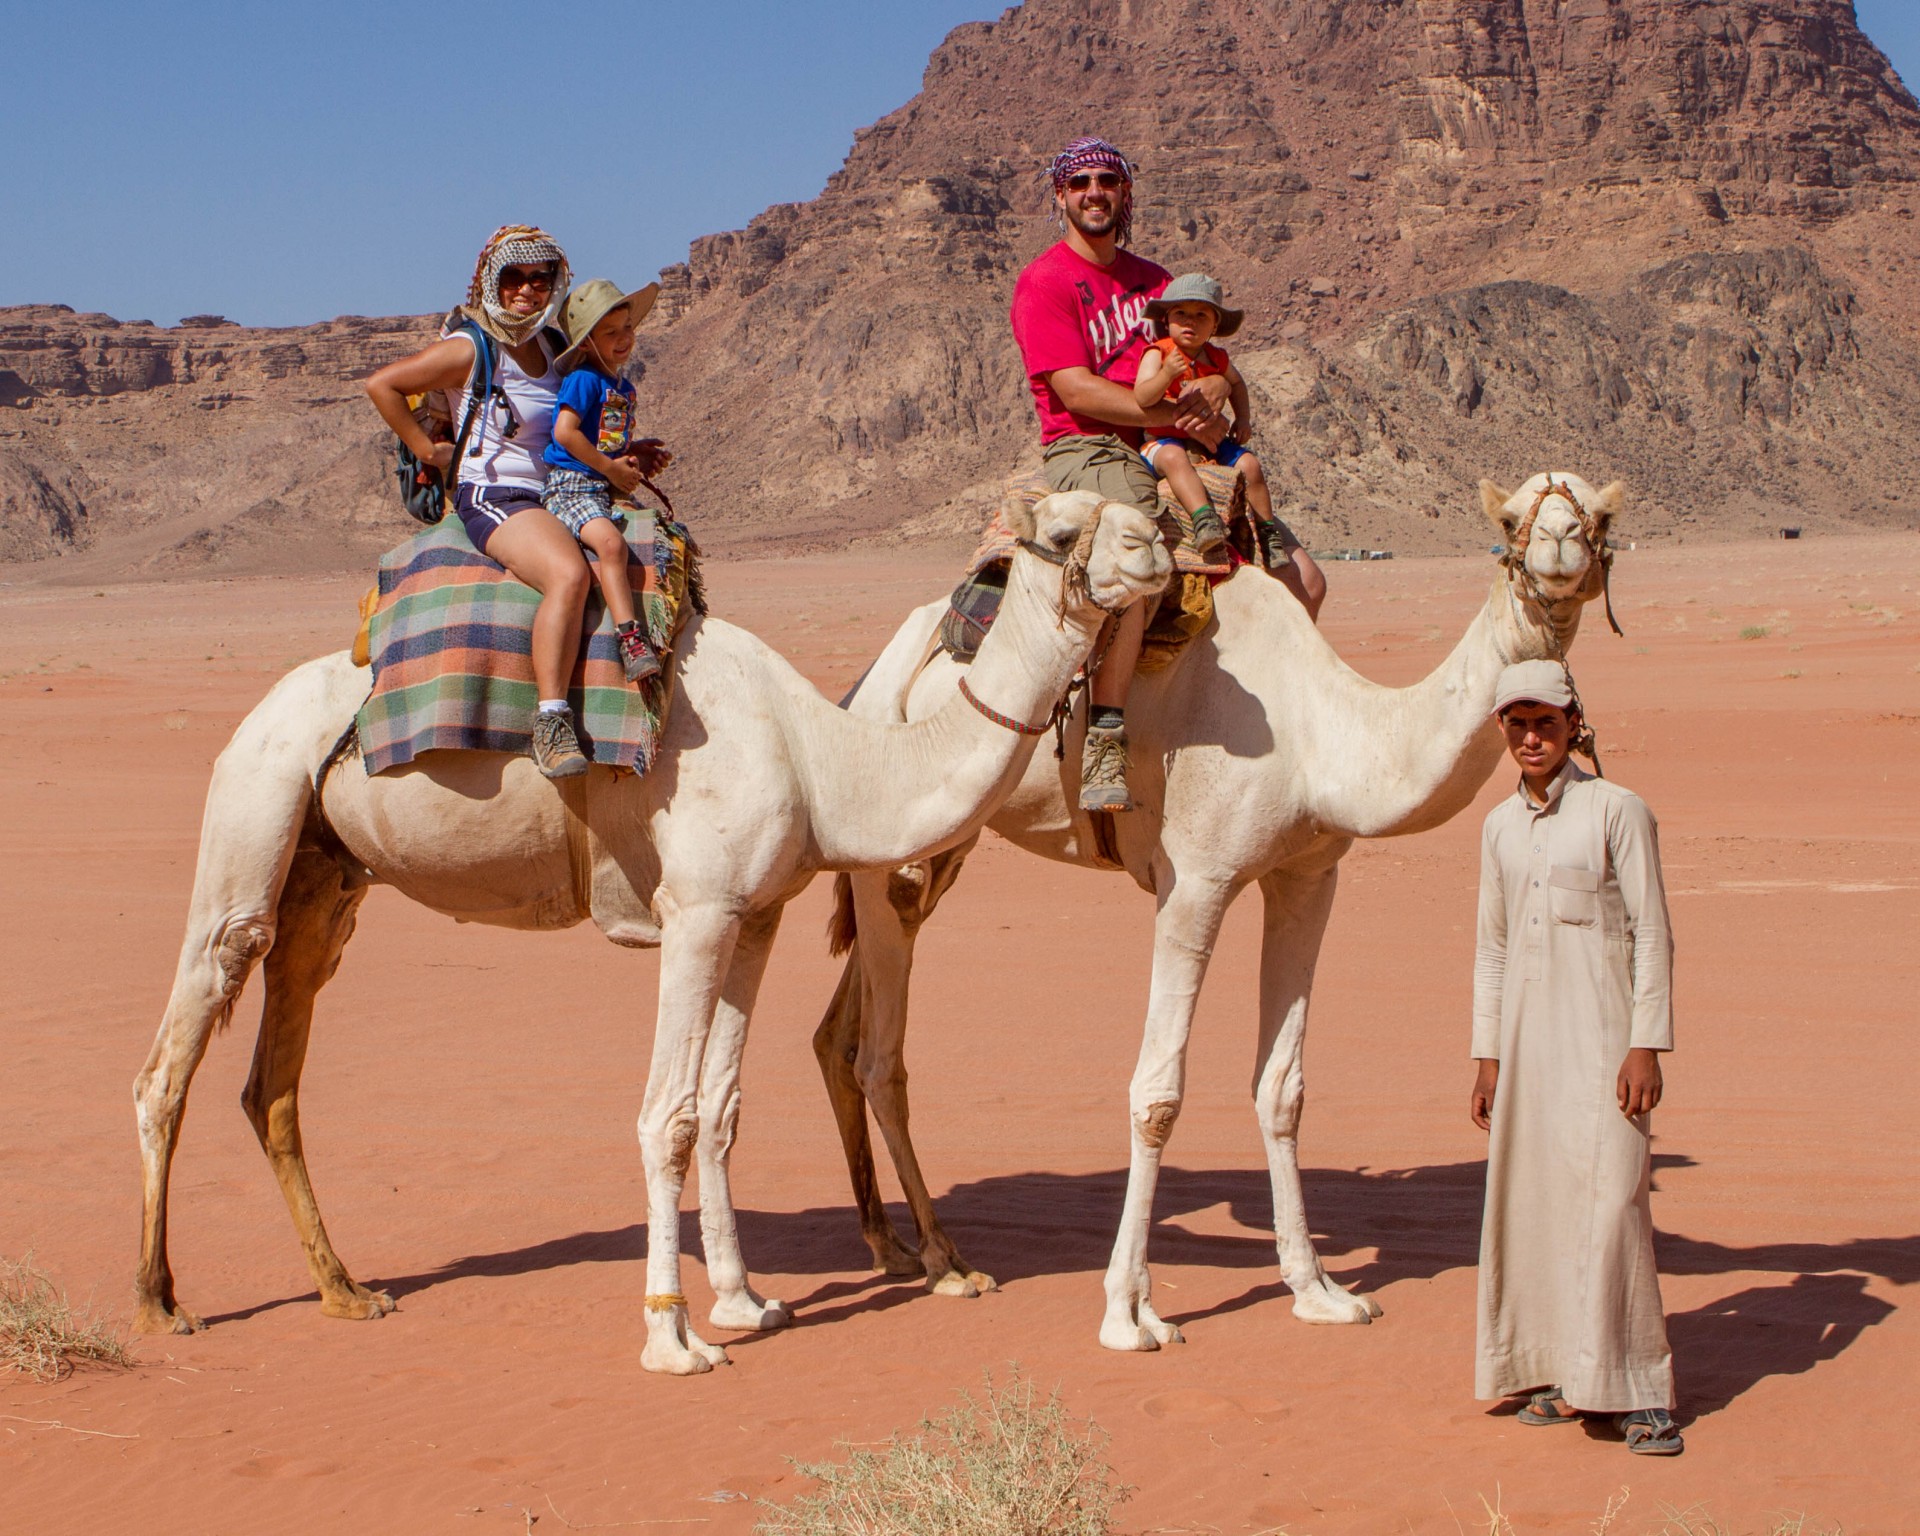 Family rides camels through Wadi Rum